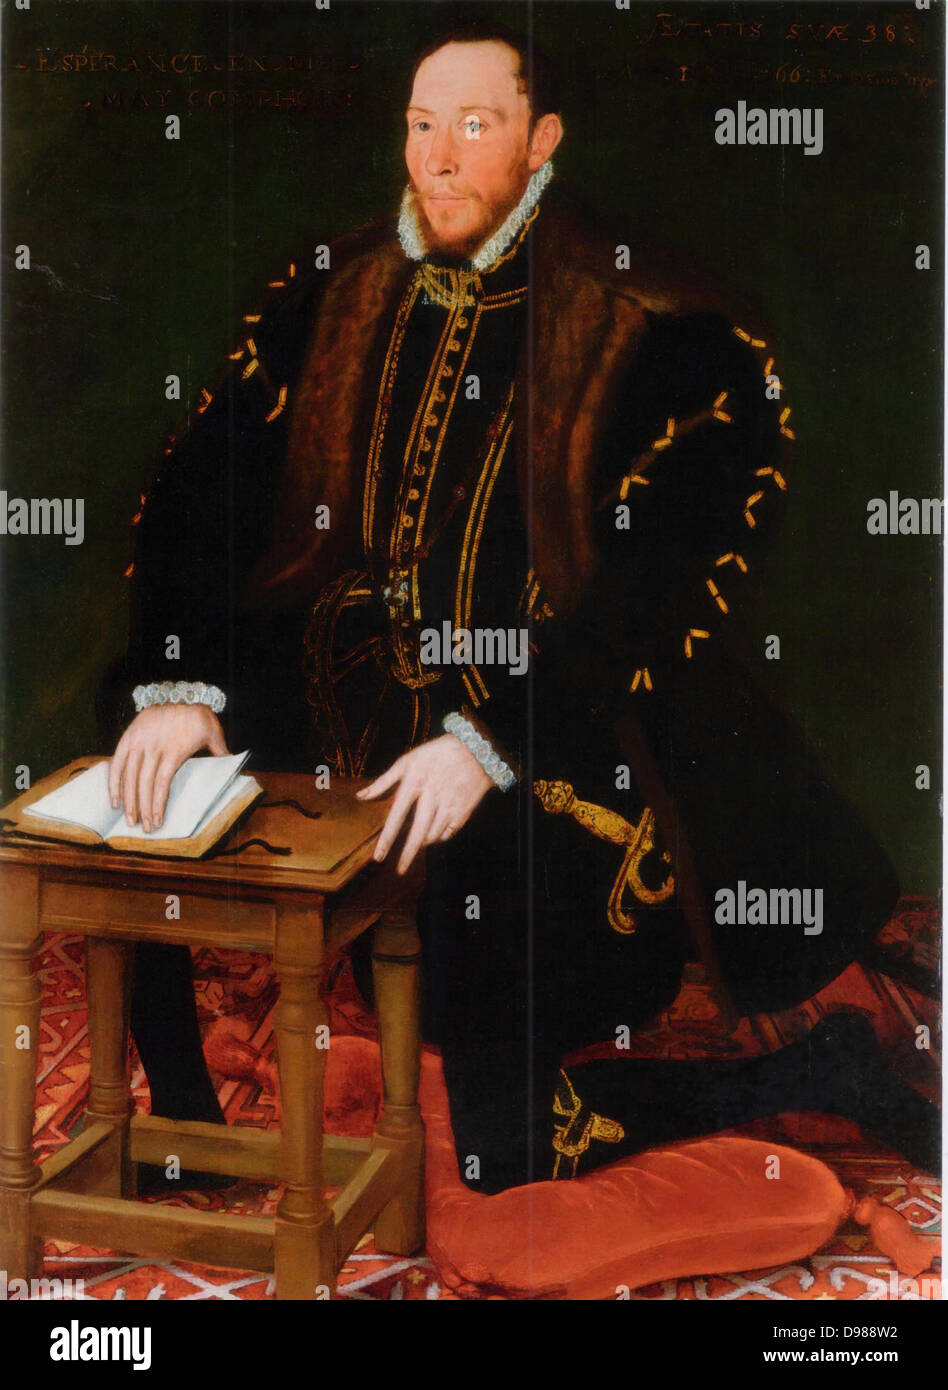 Thomas Percy, 7th Earl of Northumberland (1528-1572) Englischer Adliger, der römisch-katholischen Glaubens. Im Jahre 1569 führte die steigende des Nordens zur Unterstützung von Maria Stuart. Wenn es versagt er floh nach Schottland, sondern wurde auf die Englische übergeben, des Hochverrats für schuldig befunden und enthauptet. Später selig gesprochen, die von der römisch-katholischen Kirche. Stockfoto